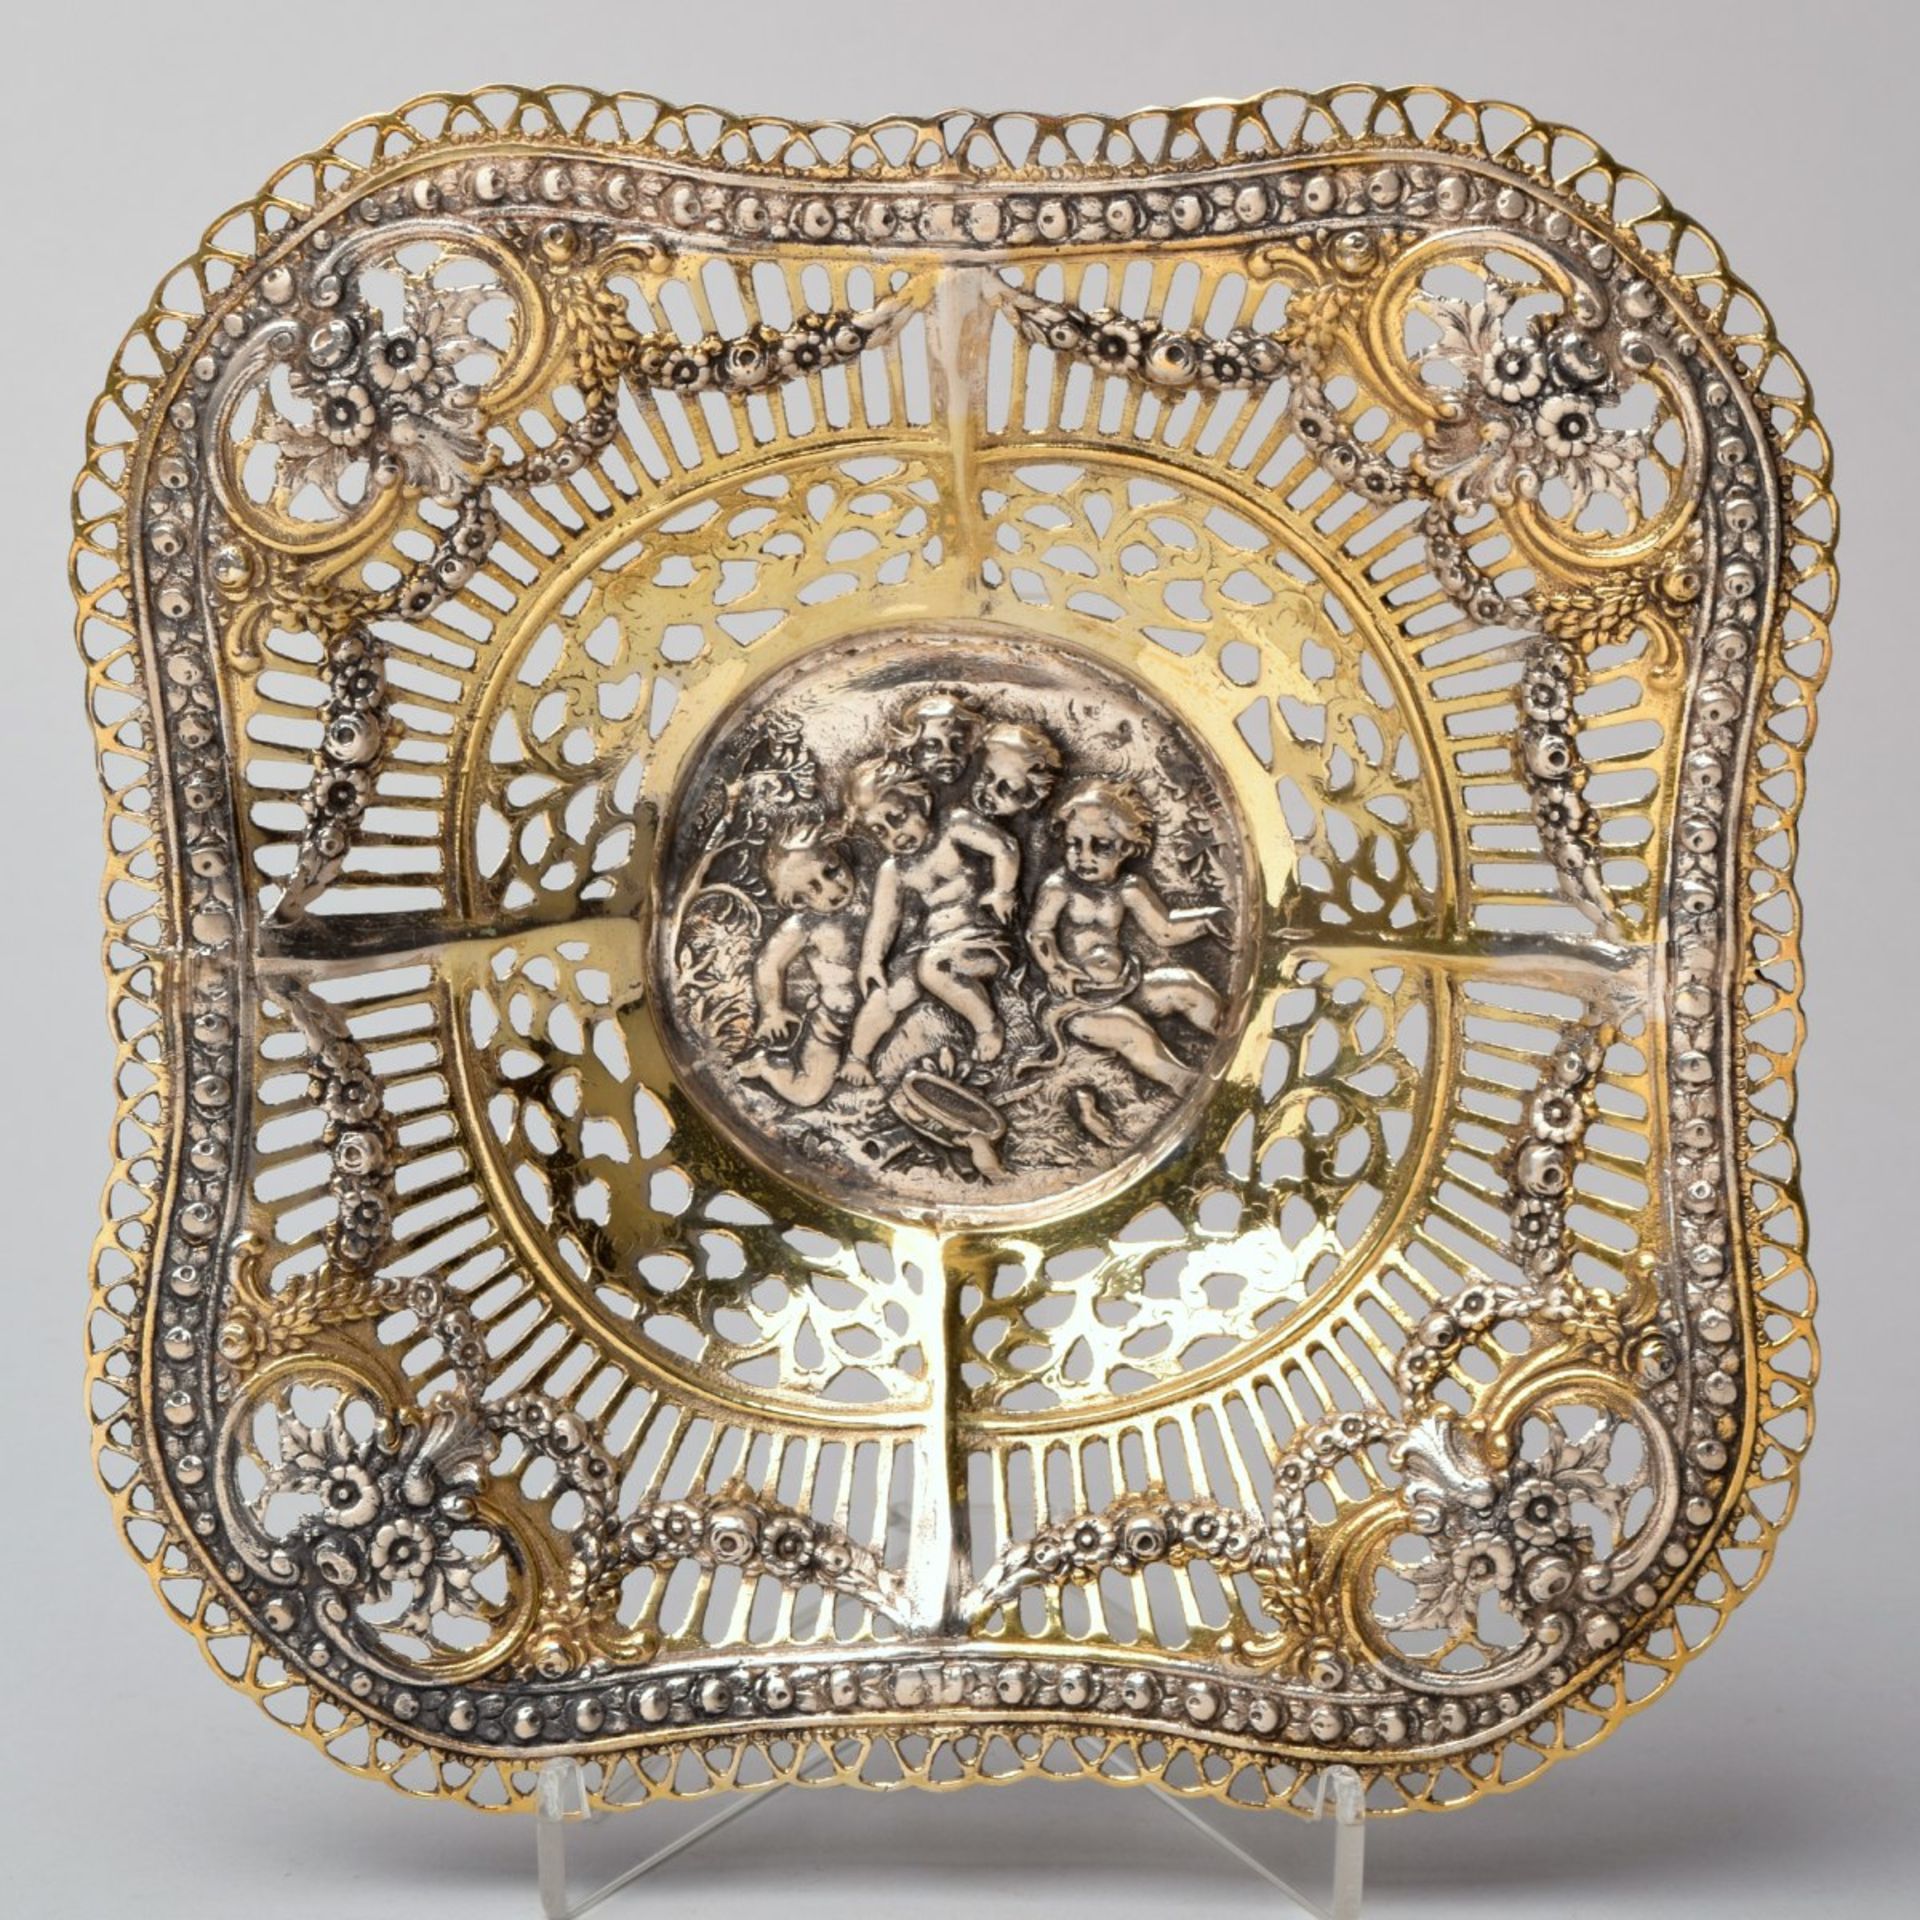 Zierschale Silber 800, Teilvergoldung, ungemarkt, im Stil des Historismus, runder Stand mit viersei - Bild 2 aus 2